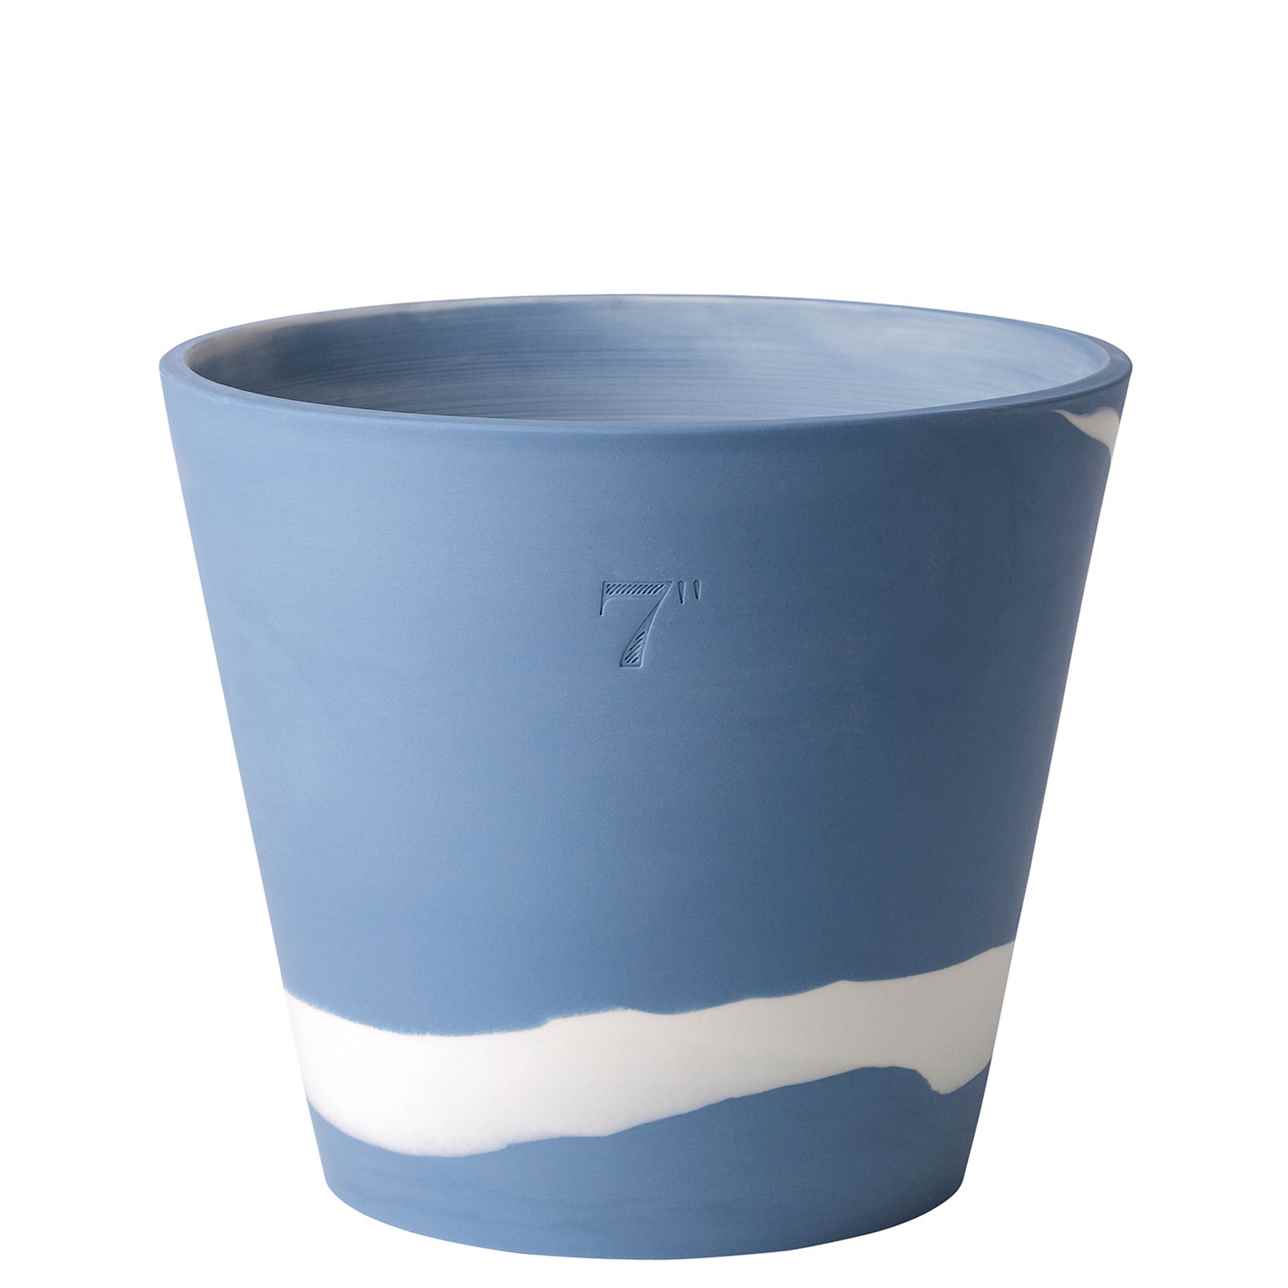 Wedgwood Burlington Pots White on Pale Blue Pot 19cm